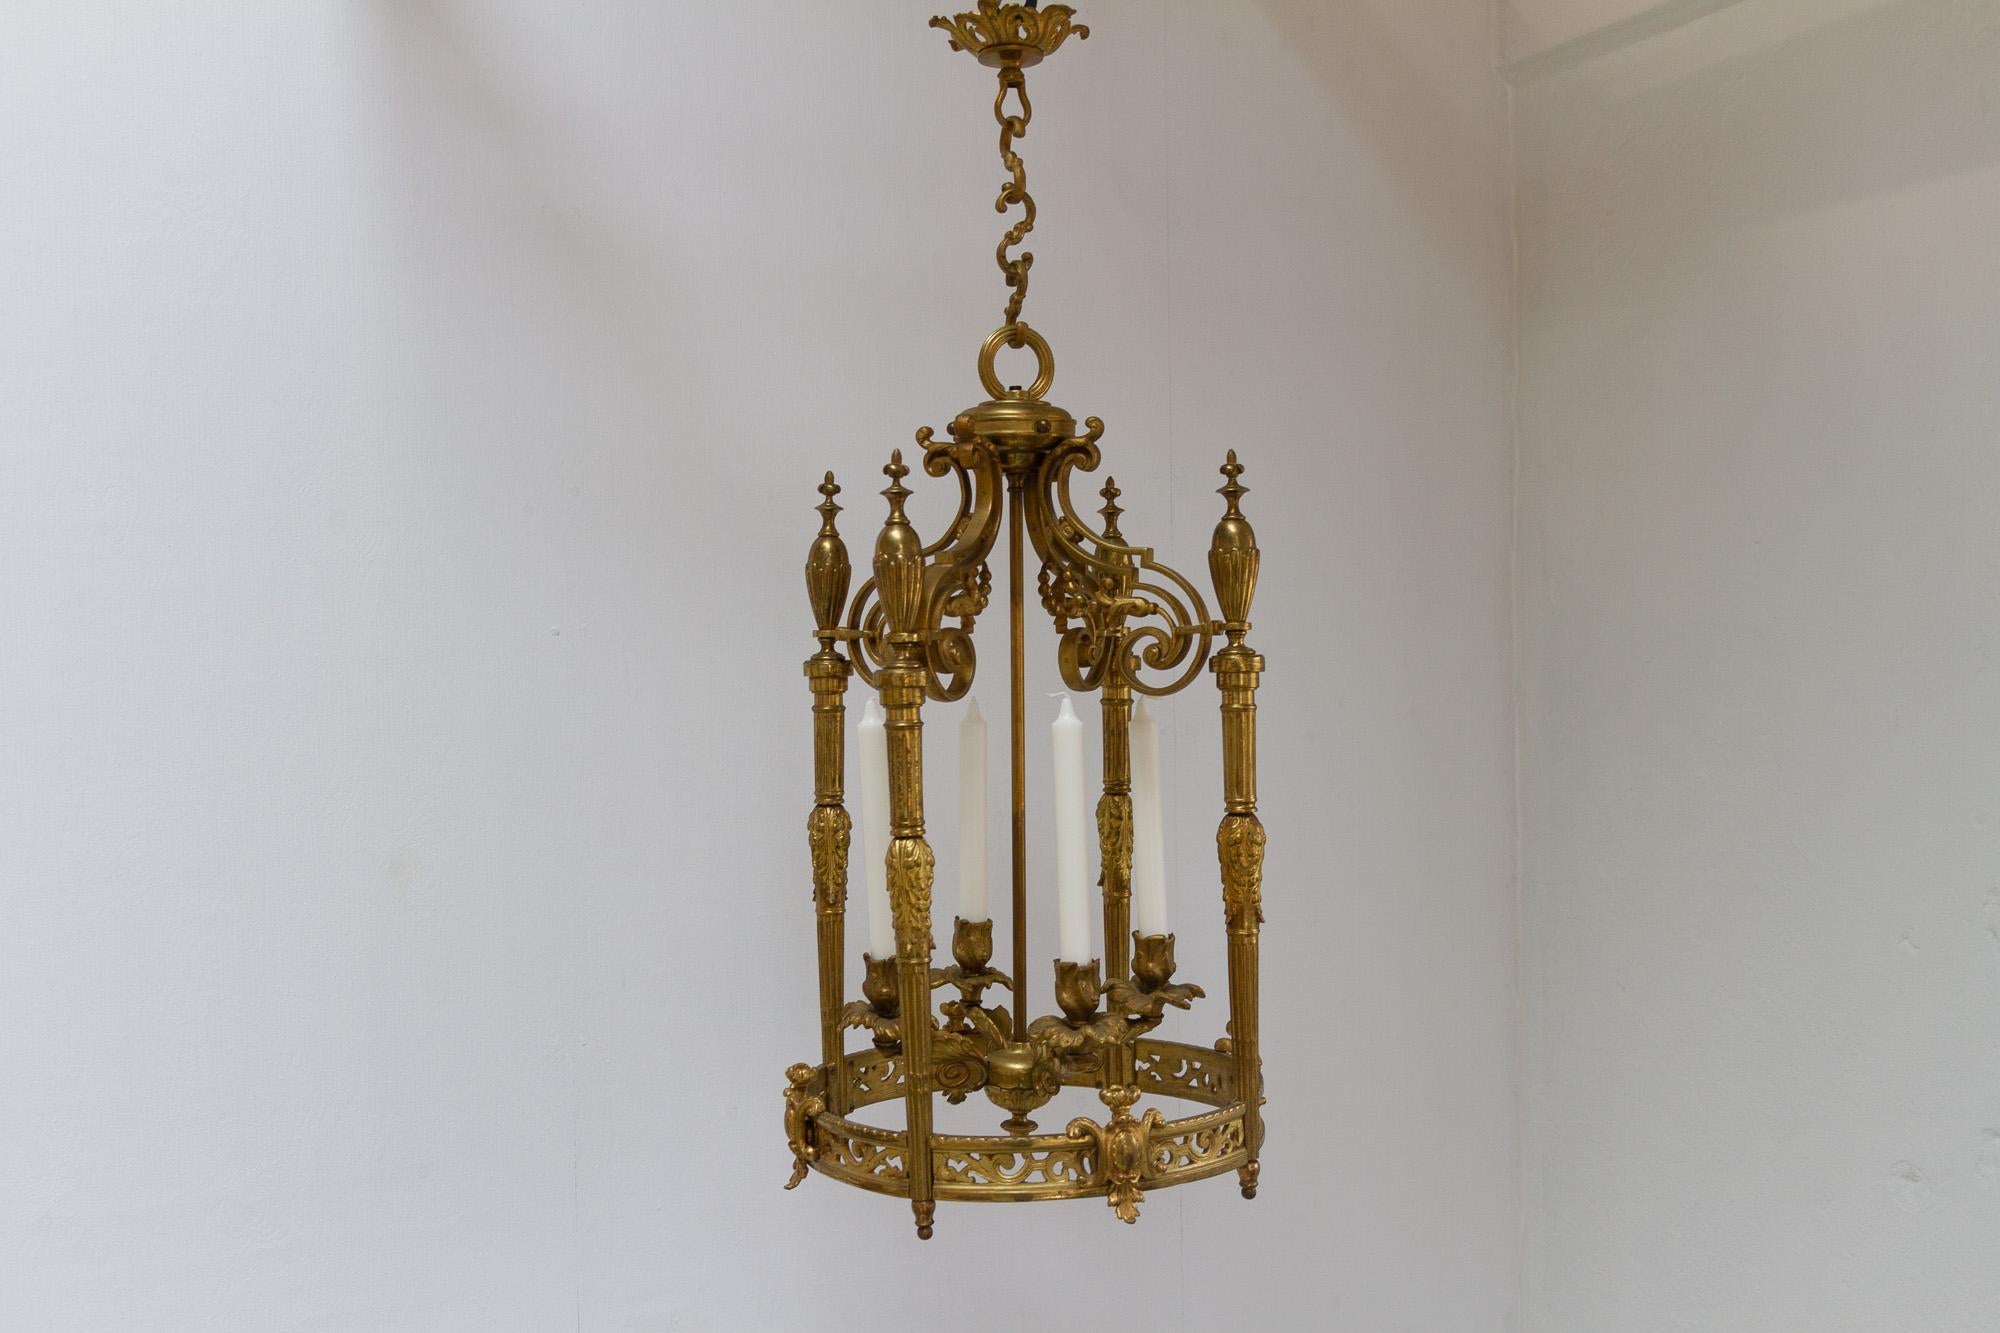 Lustre français ancien de style Napoléon III en bronze doré, années 1850.
Elegant lustre suspendu en forme de lanterne pour quatre bougies. Suspendue à un baldaquin avec une chaîne à trois maillons. 
Bronze doré (ormolu) avec de nombreux détails